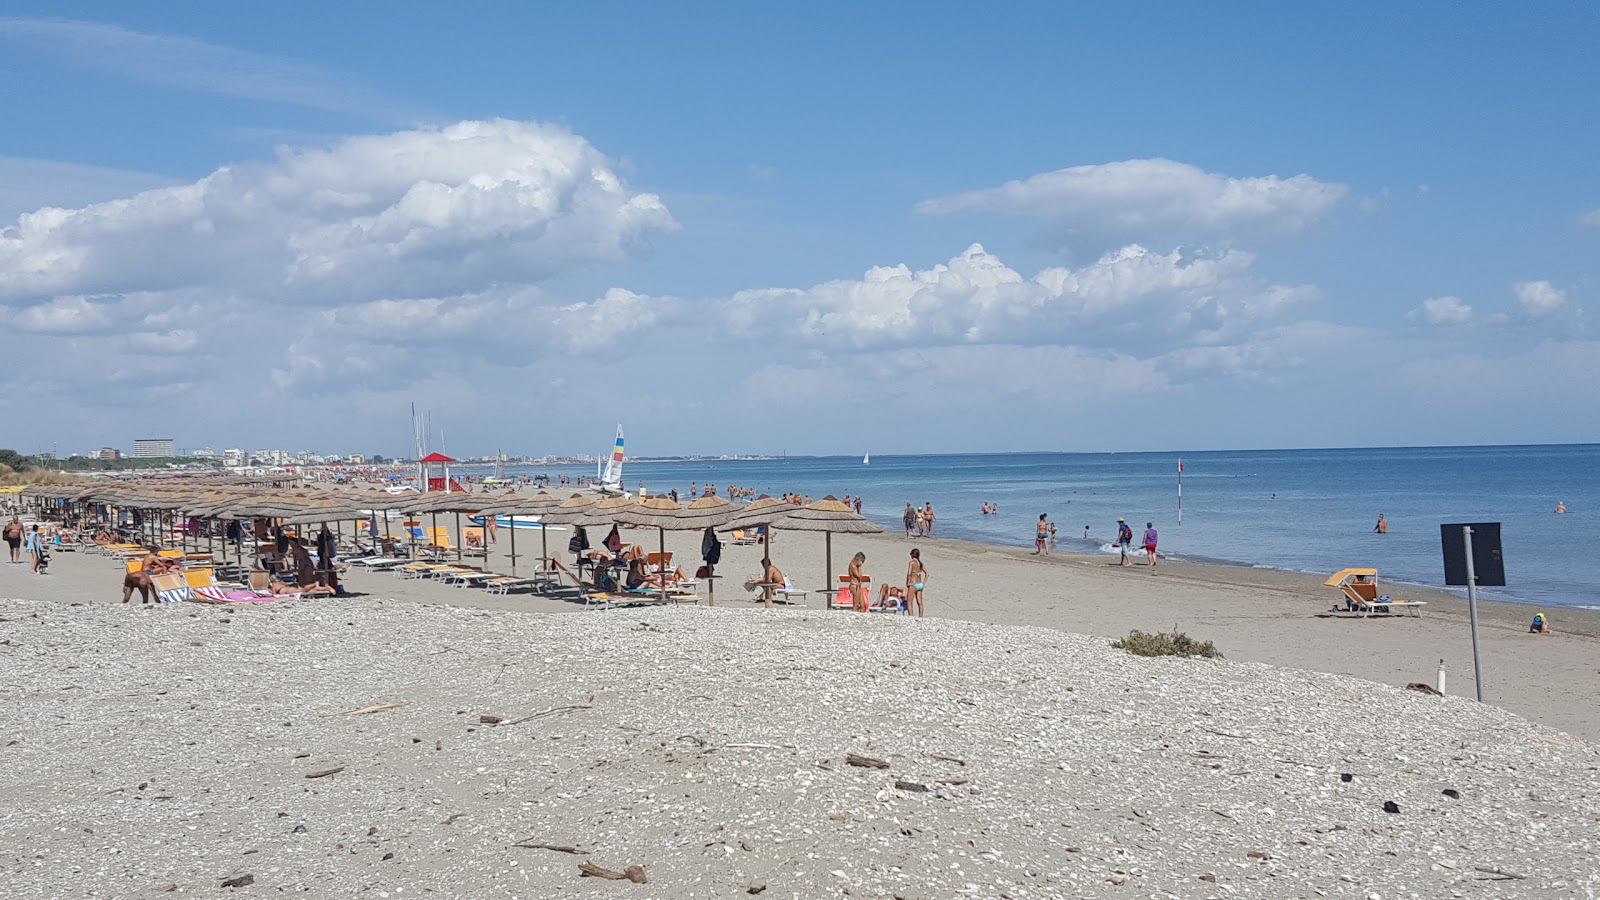 Fotografija Spiaggia di Comacchio nahaja se v naravnem okolju